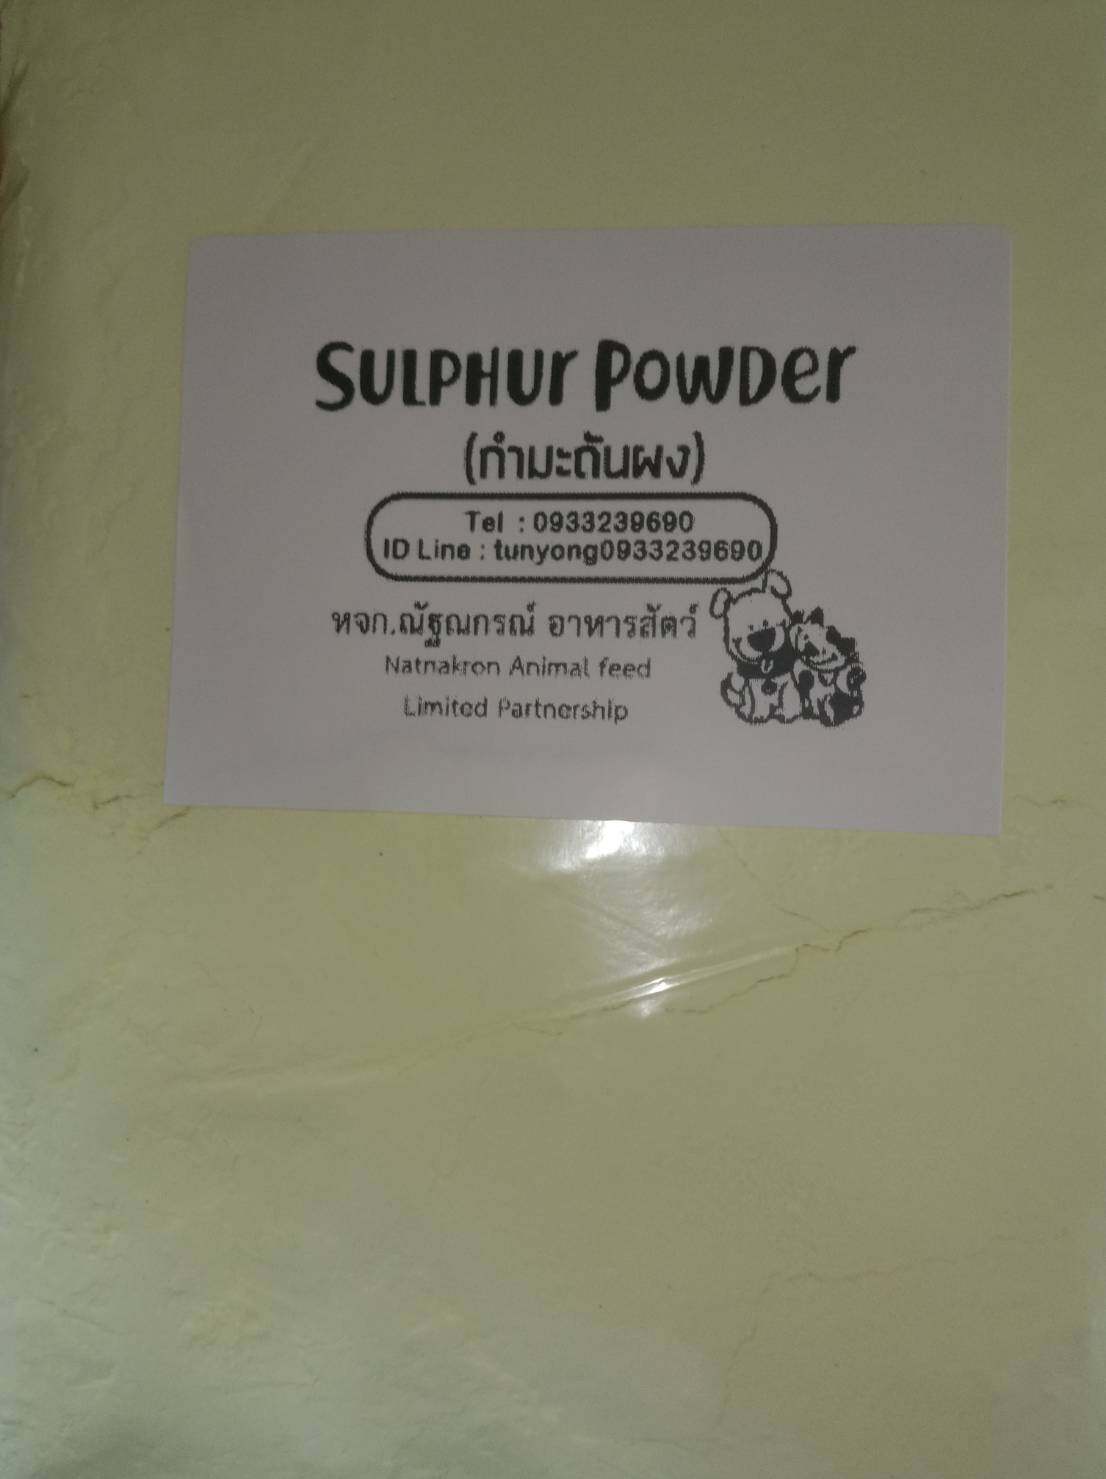 กำมะถันผง หรือ ผงกำมะถันเหลือง (sulfur Powder) ขนาดบรรจุ 1กก.  ราคา 35 บาท /ไล่งู/ไล่แมลงคลาน/แก้ขี้เรื้อน